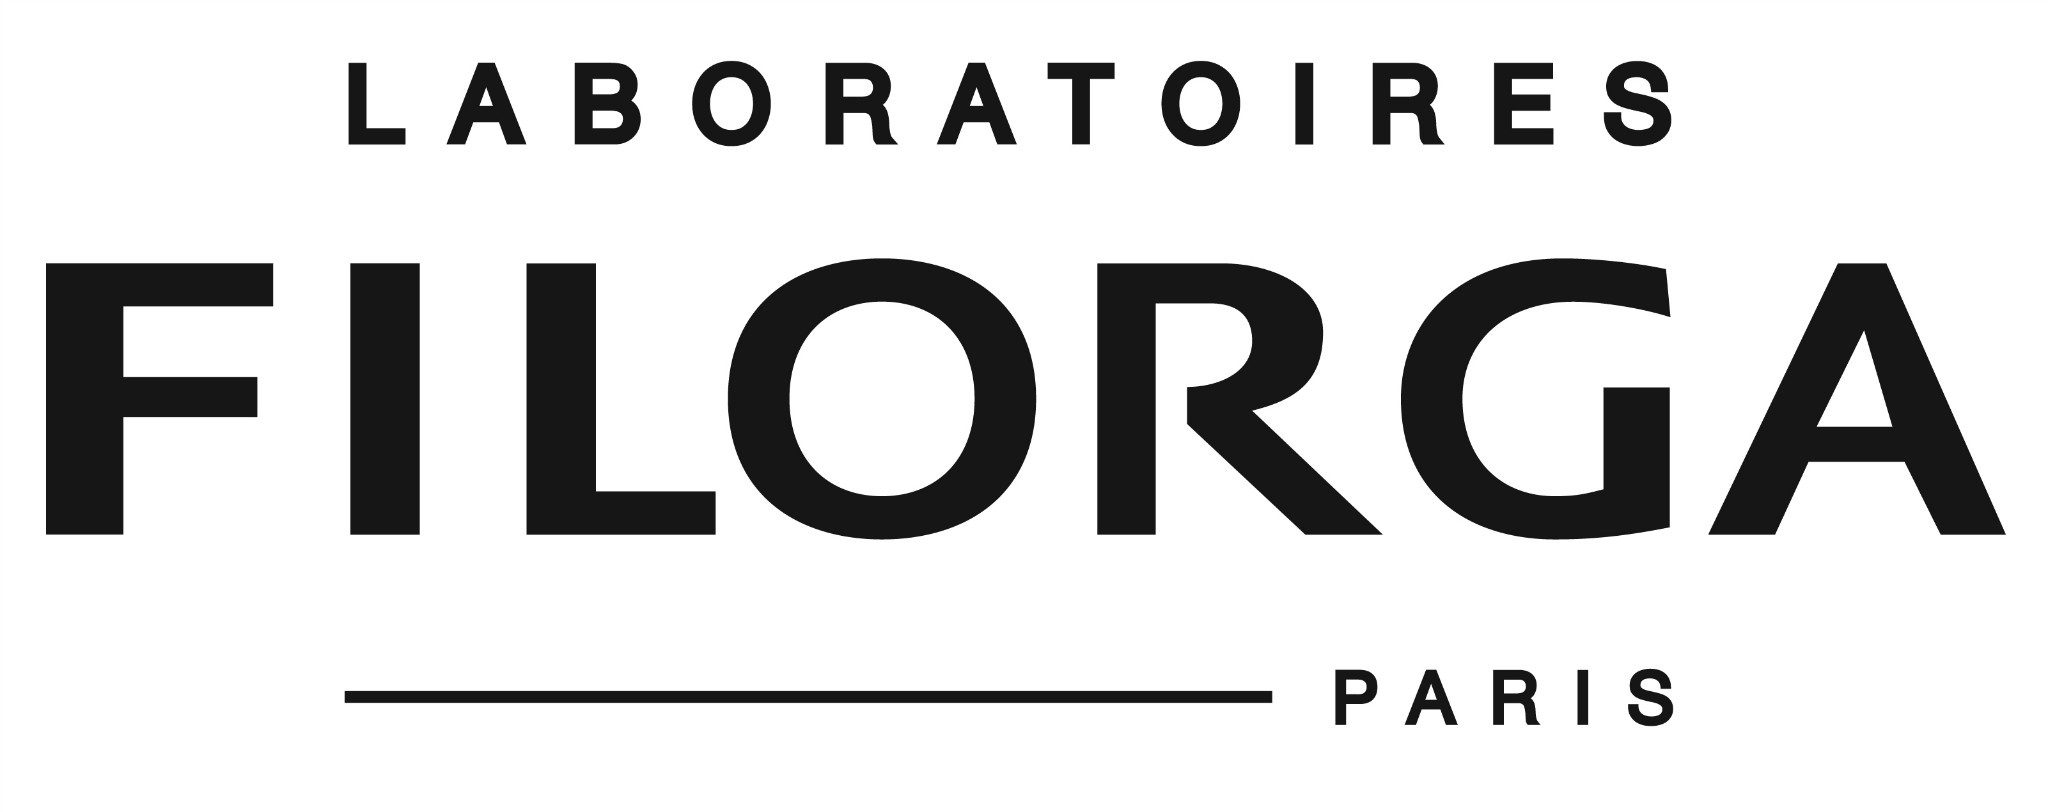 Косметика бренда FILORGA, логотип